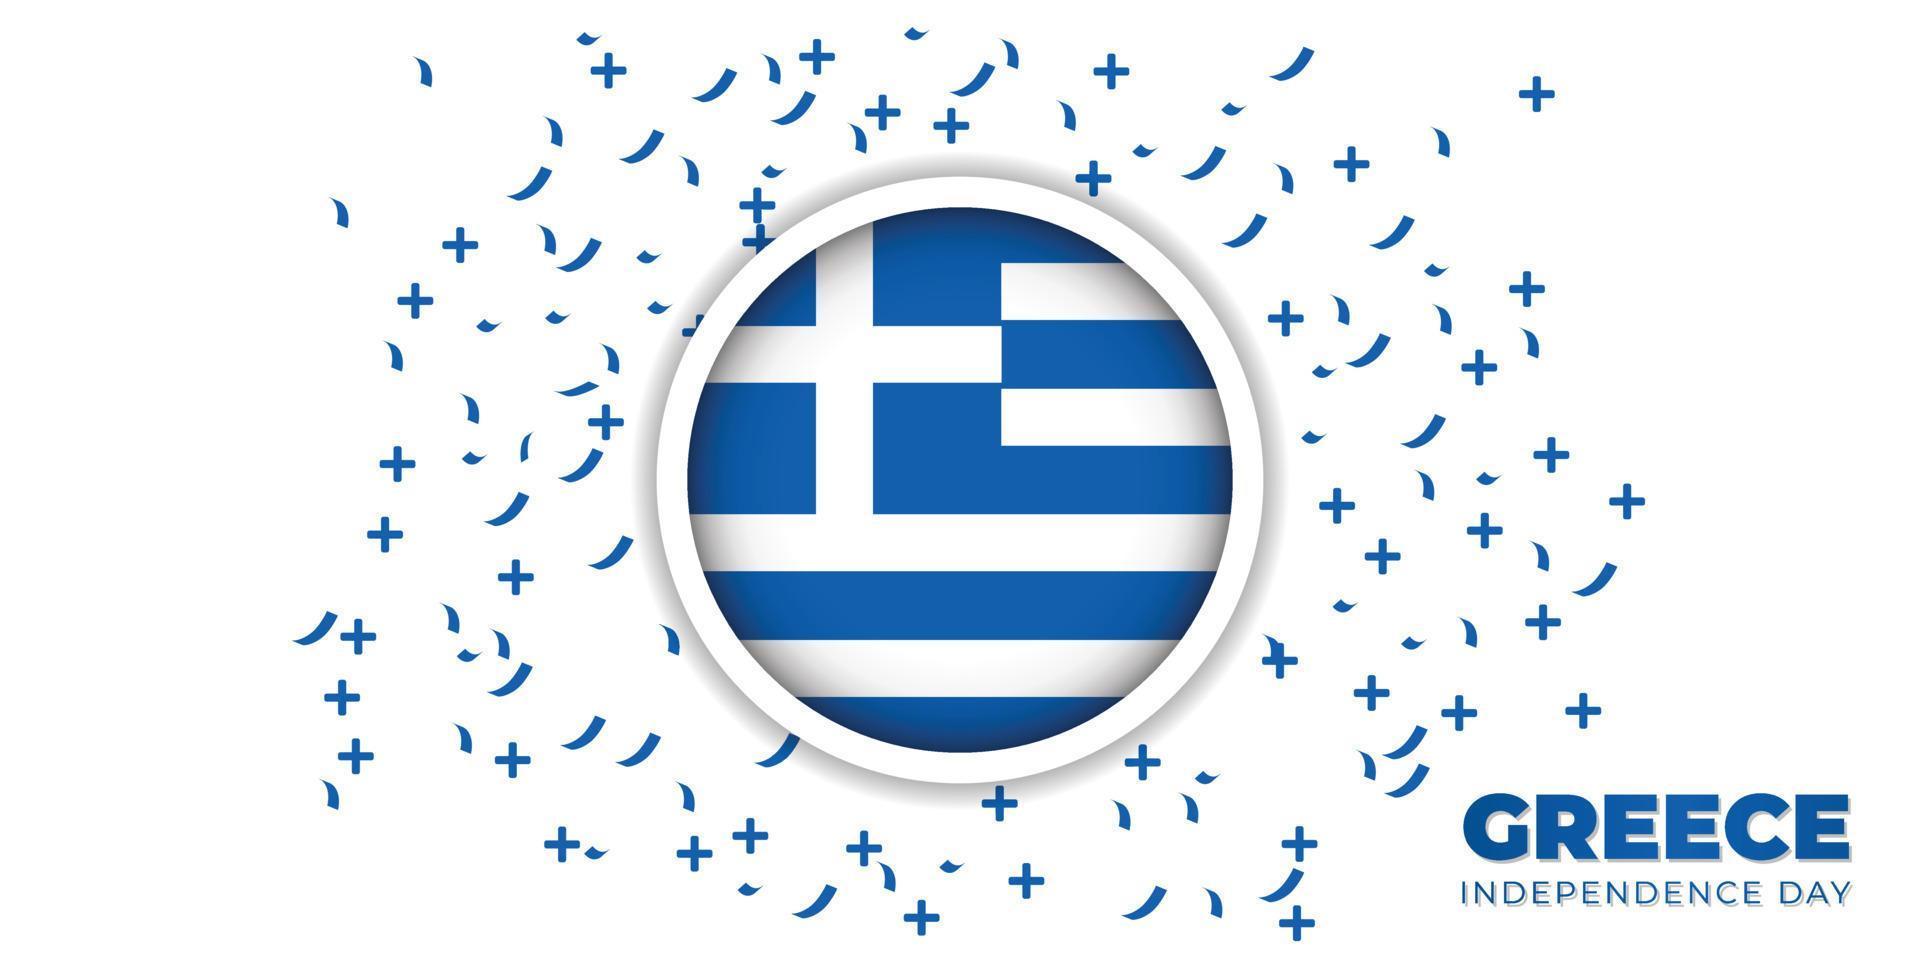 Grecia emblema bandera vector ilustración.